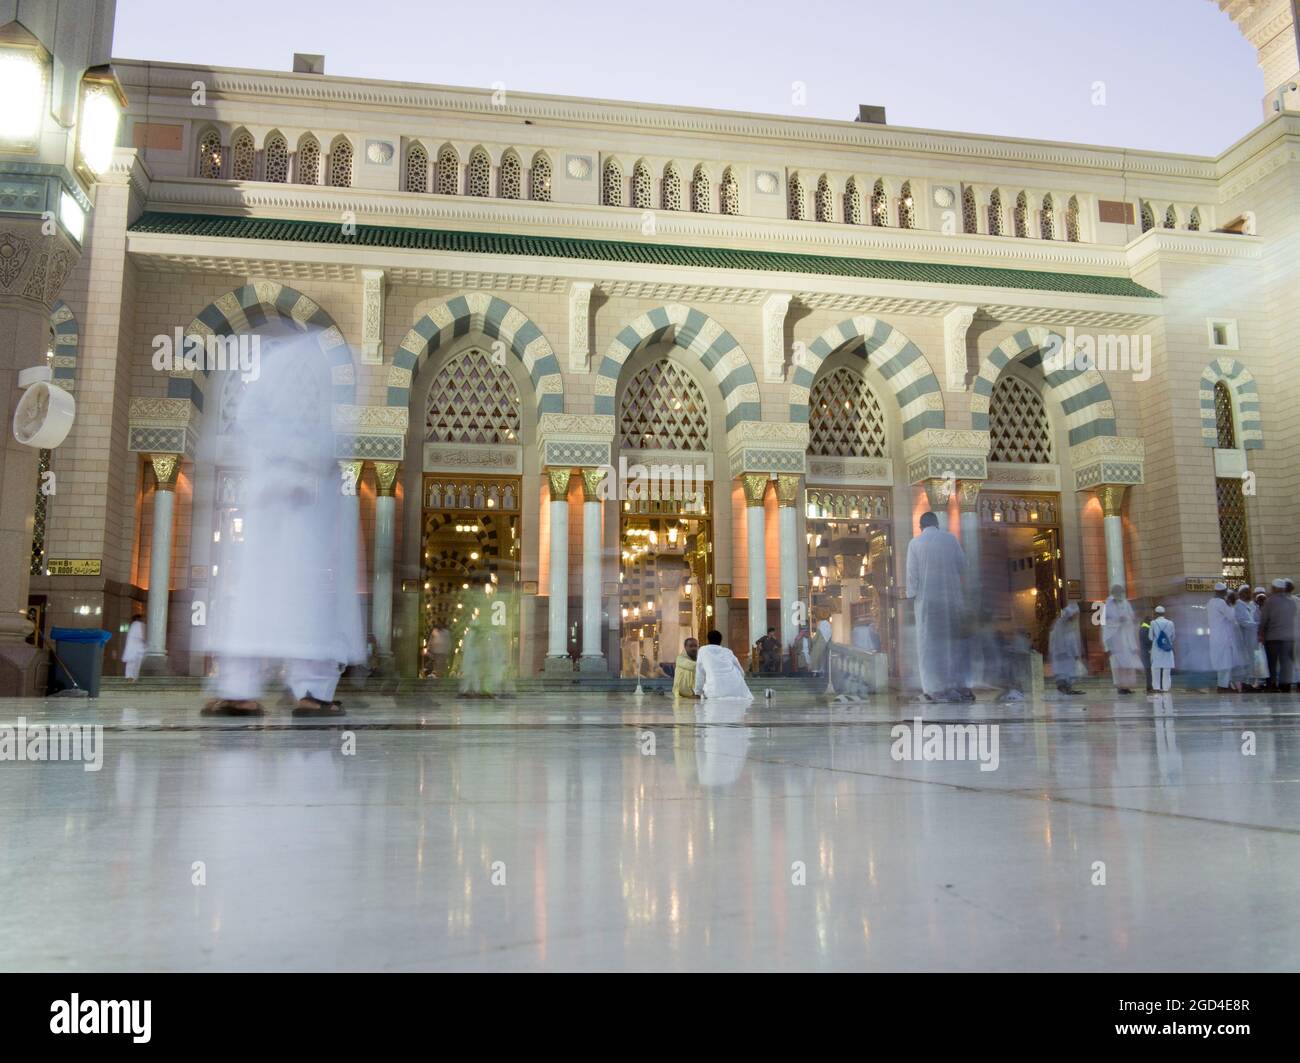 Kaaba La mezquita santa en La Meca con gente musulmana peregrinos de Hajj orando en multitud 2013 2014 Foto de stock